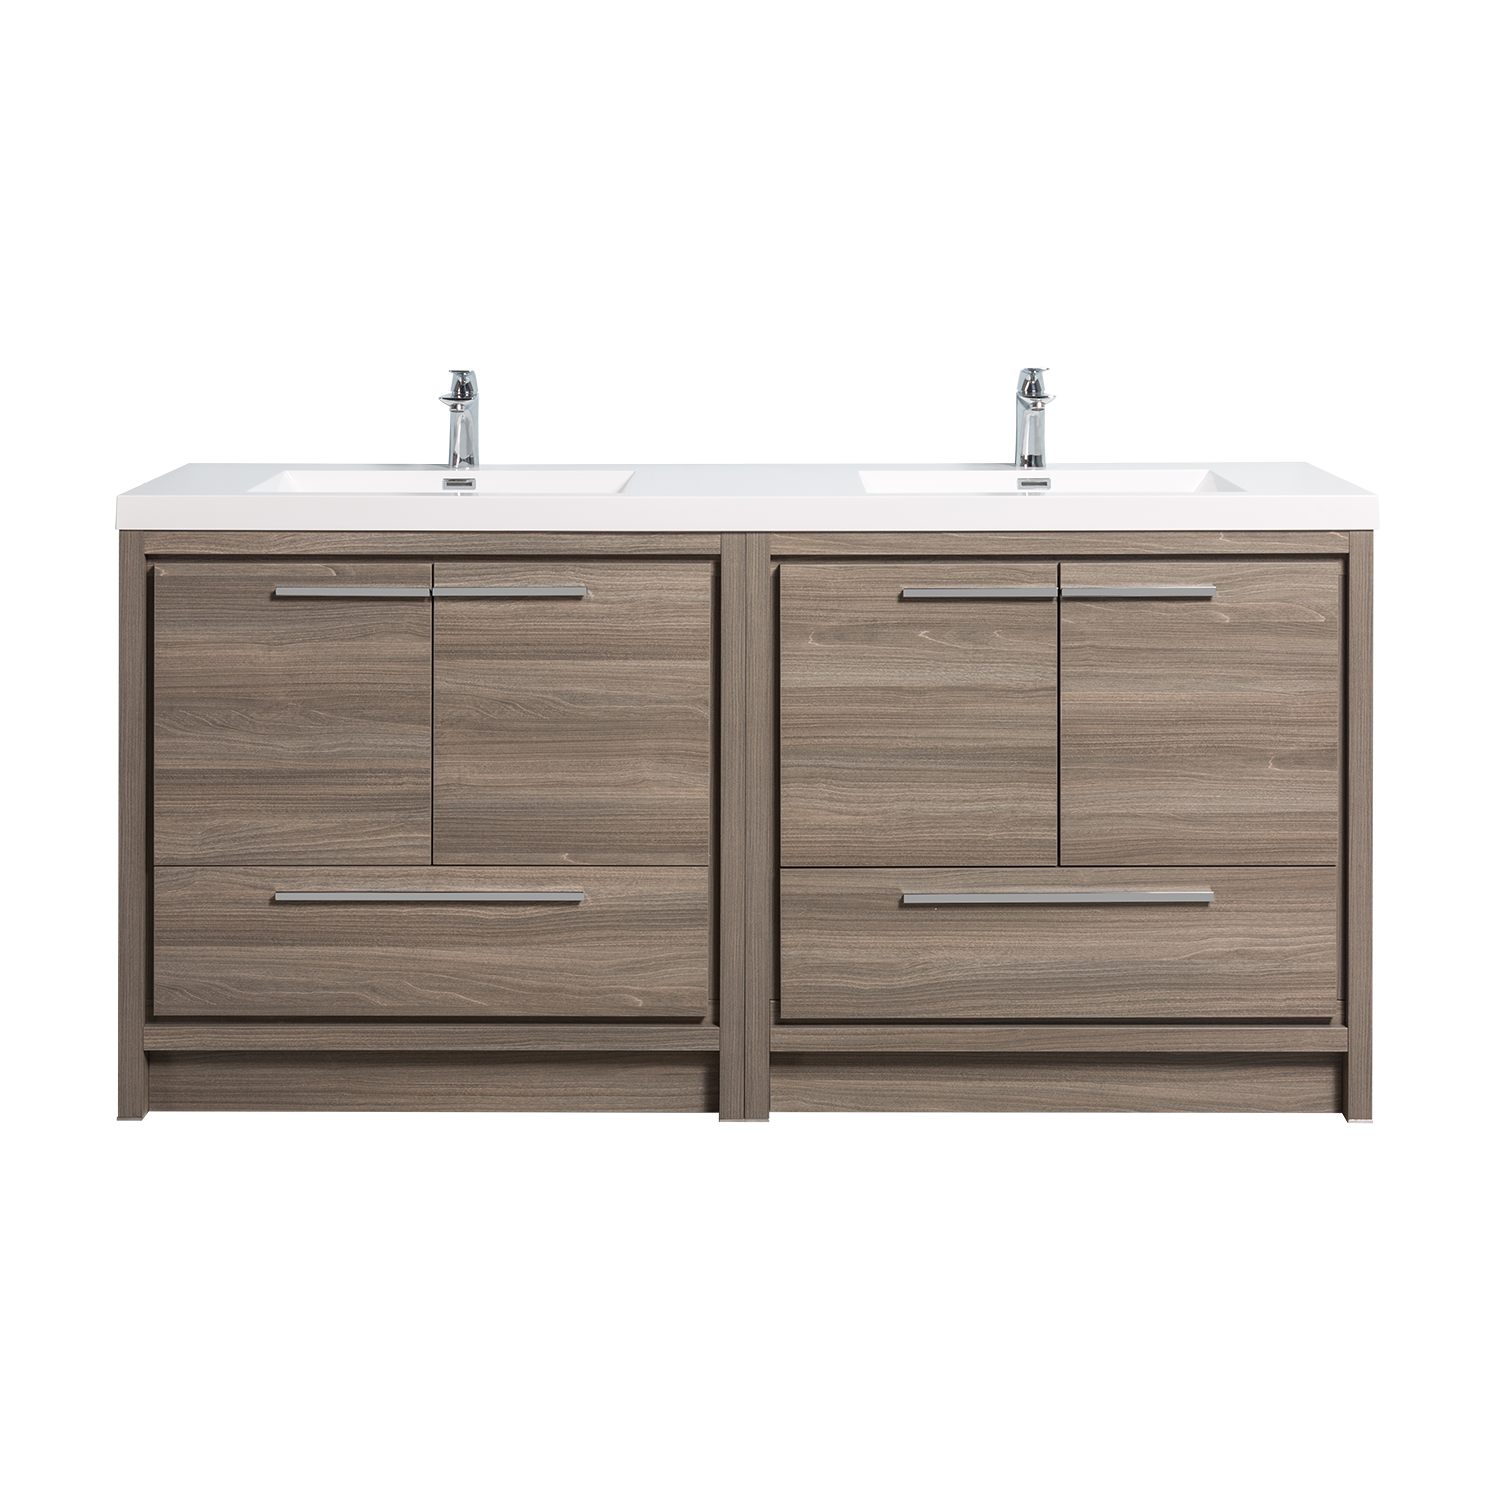 Duko Allier 70D 70" Rectangular Sink Bathroom Vanity Cabinet